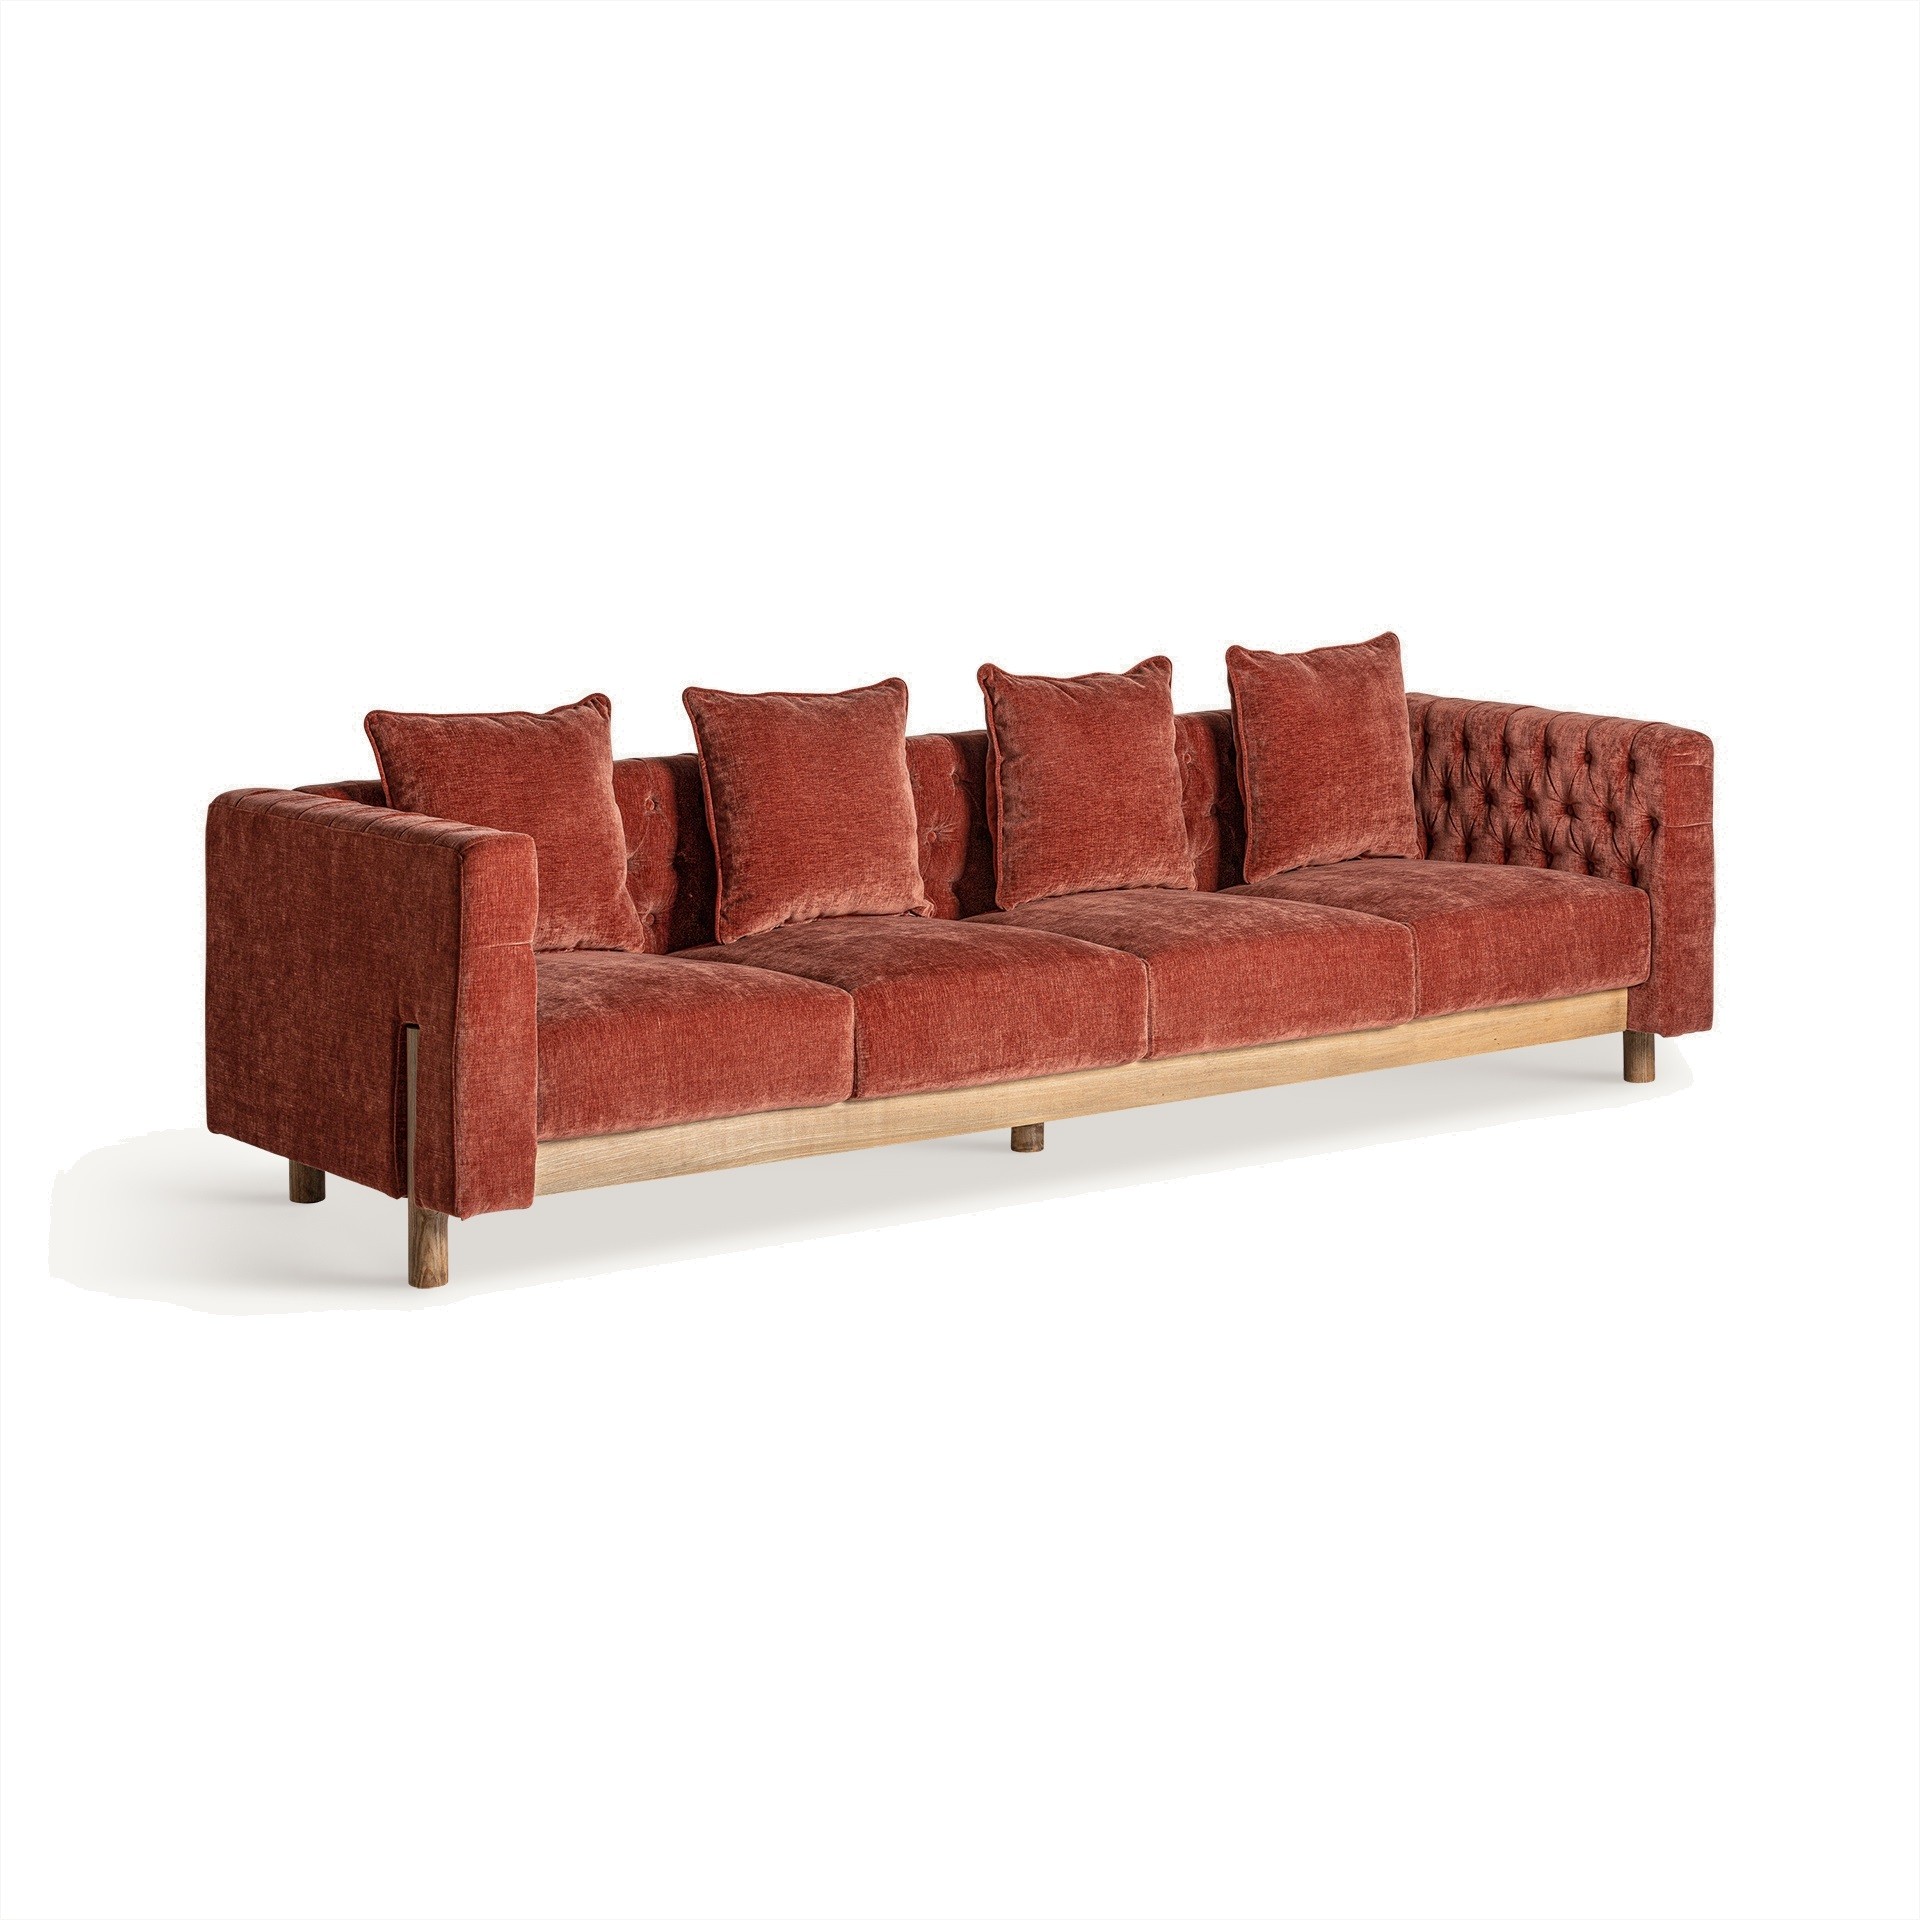 Estila Luxusná čalúnená štvormiestna sedačka Lenny s prešívaním v tehlovo červenej farbe s drevenými nožičkami v art deco štýle 267 cm